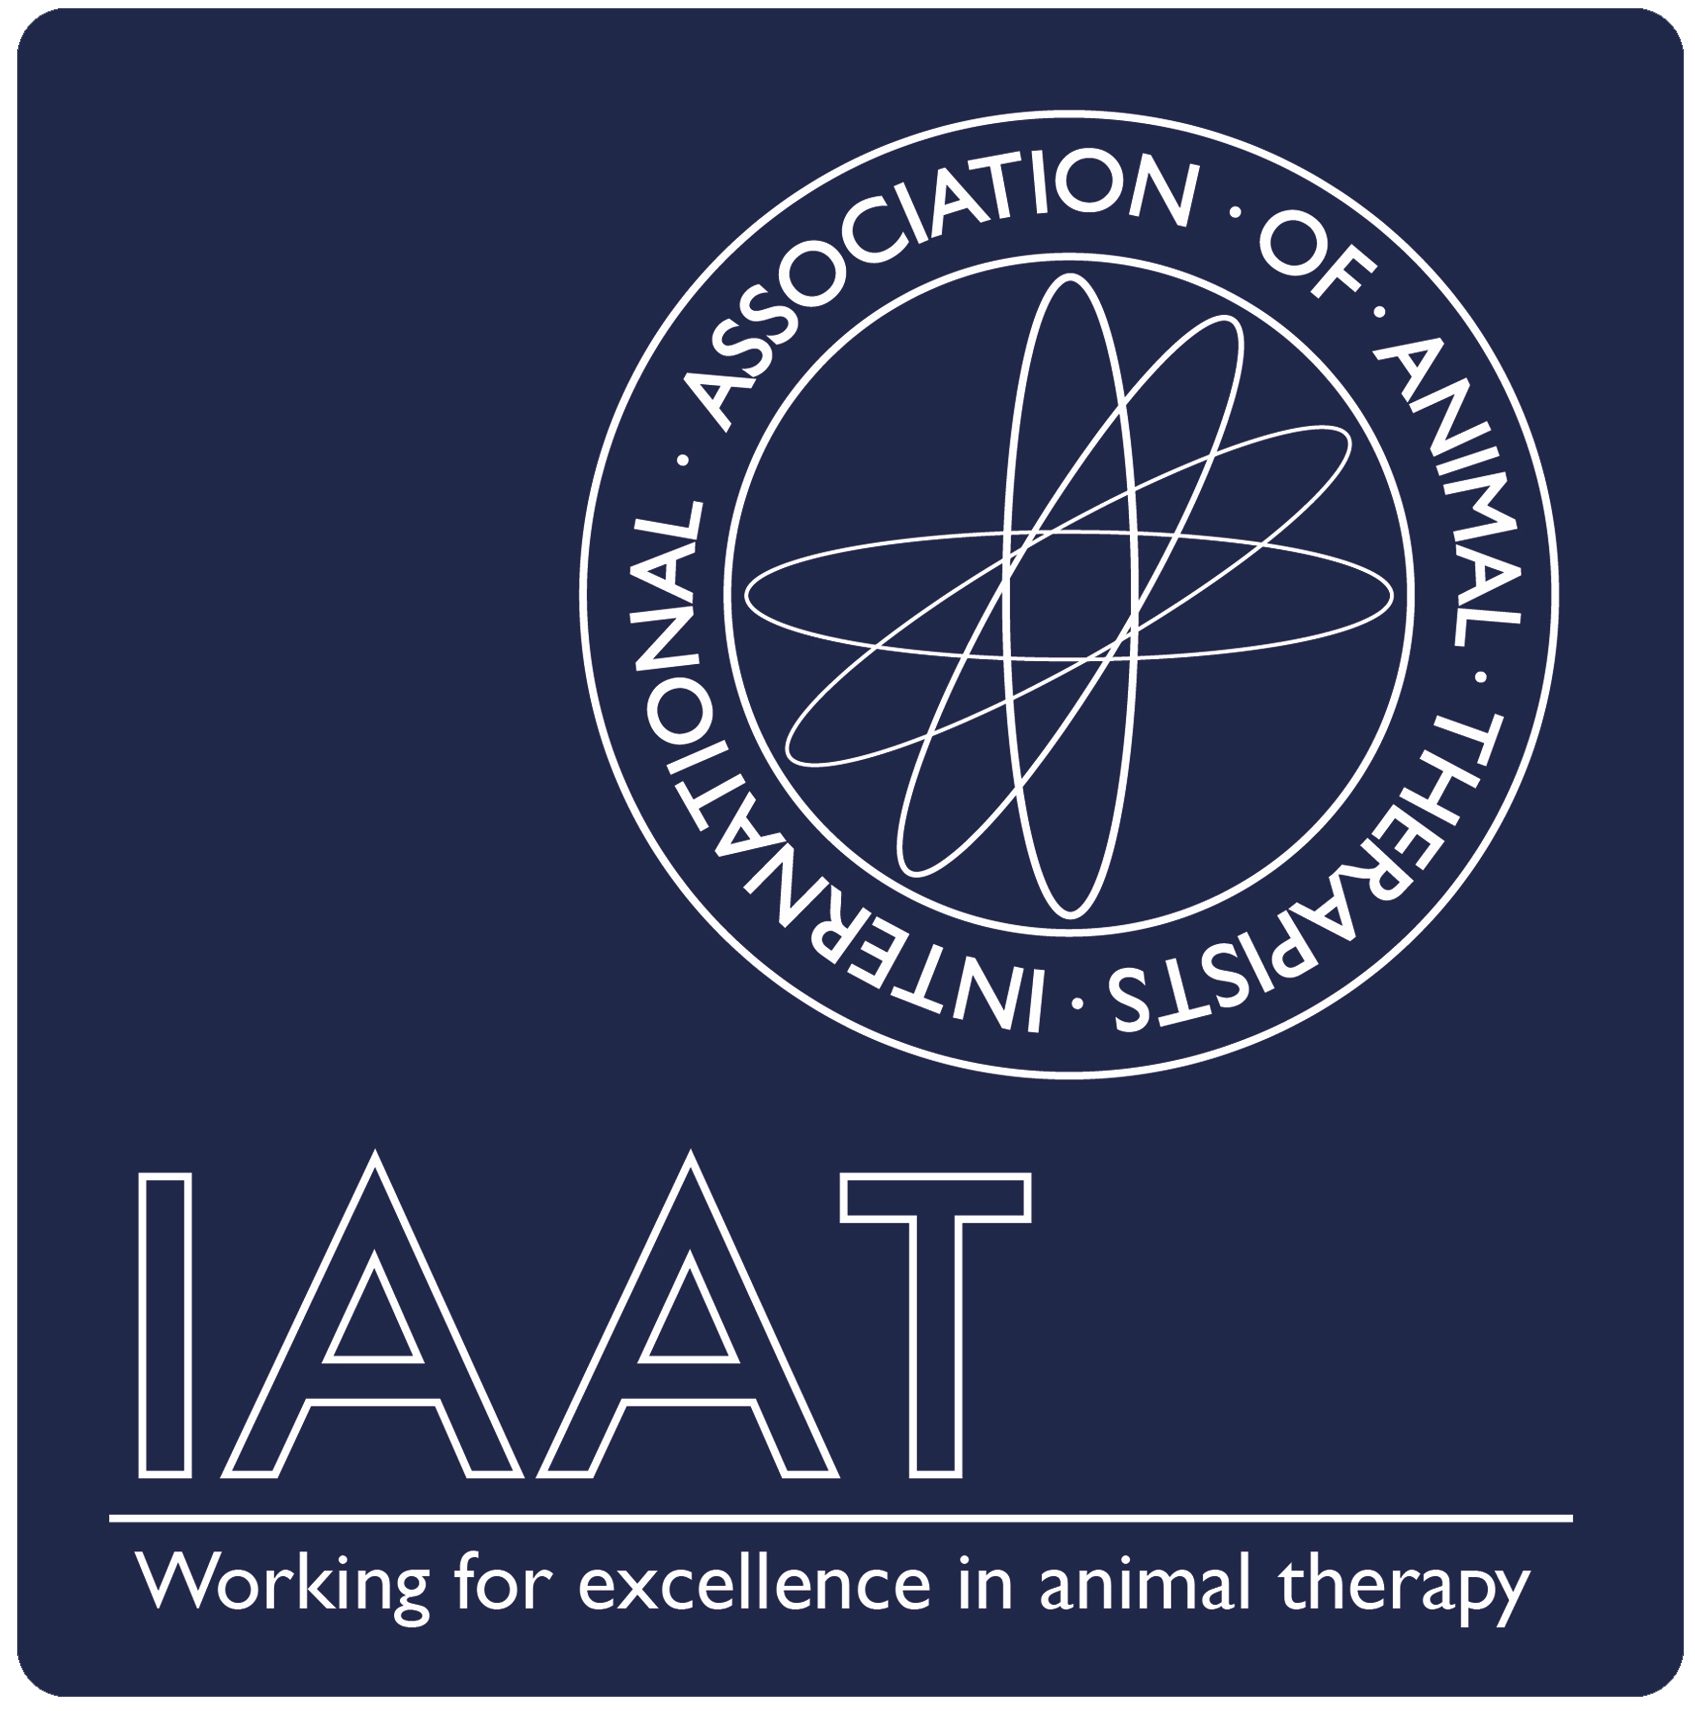 IAAT logo